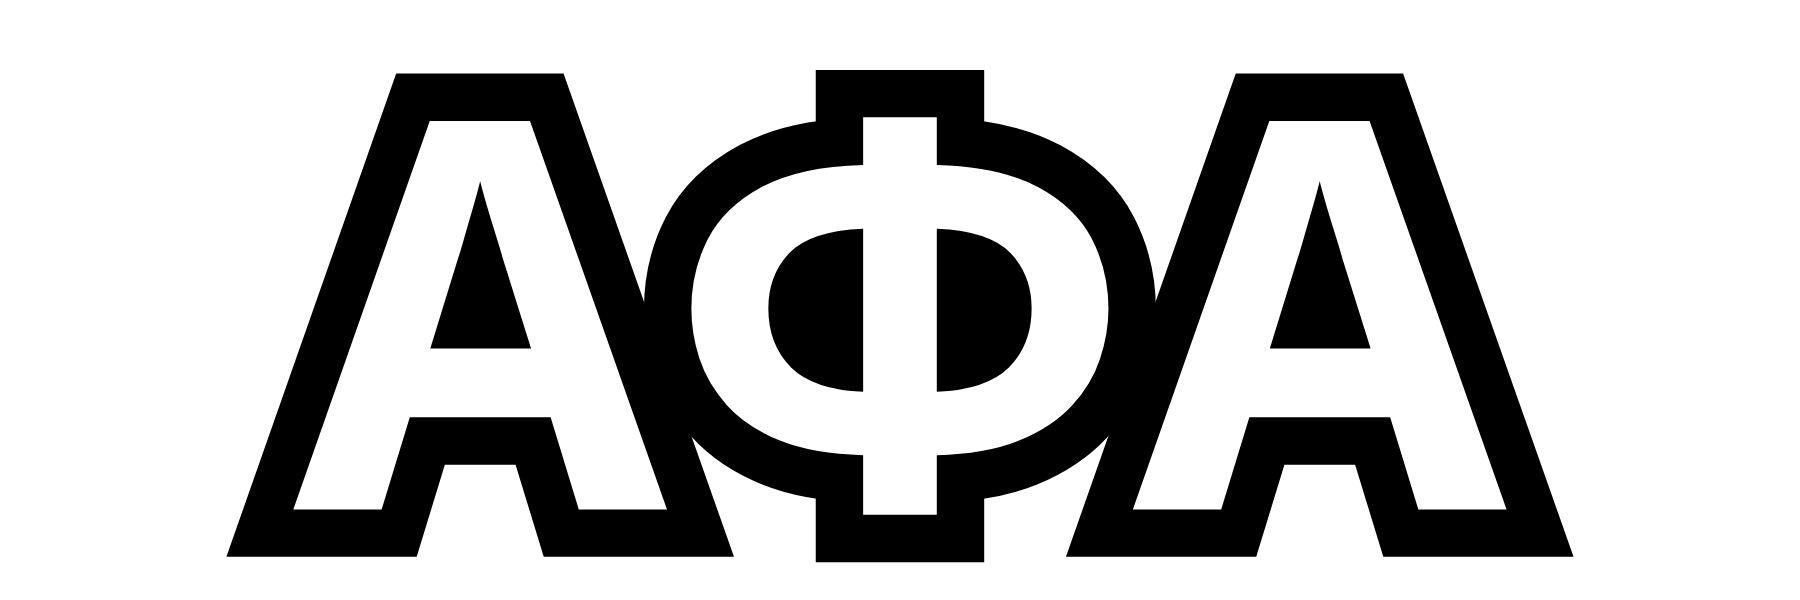 alpha symbol png